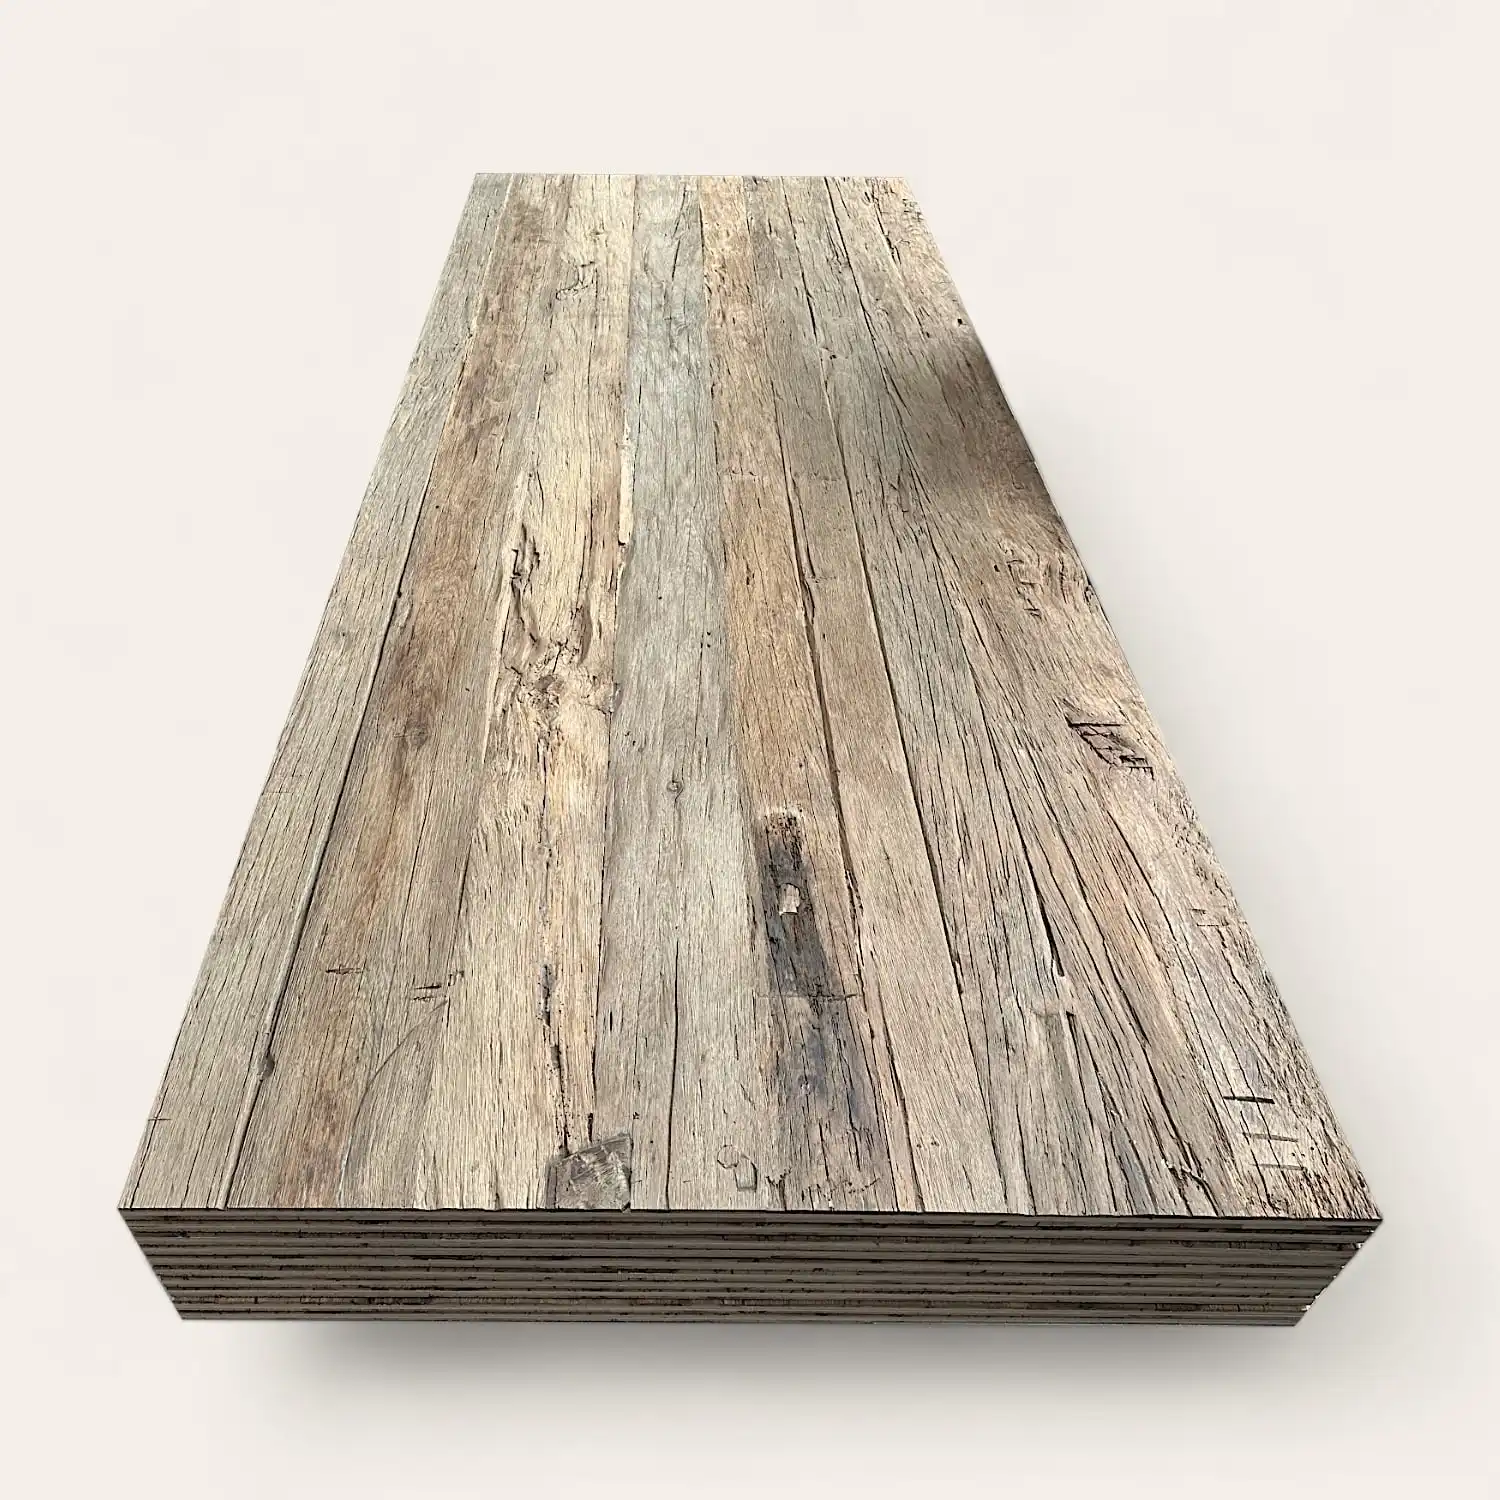  Une vue en perspective d'une longue planche de vieux bois à 5 plis avec une surface patinée et texturée, sur un fond blanc. 